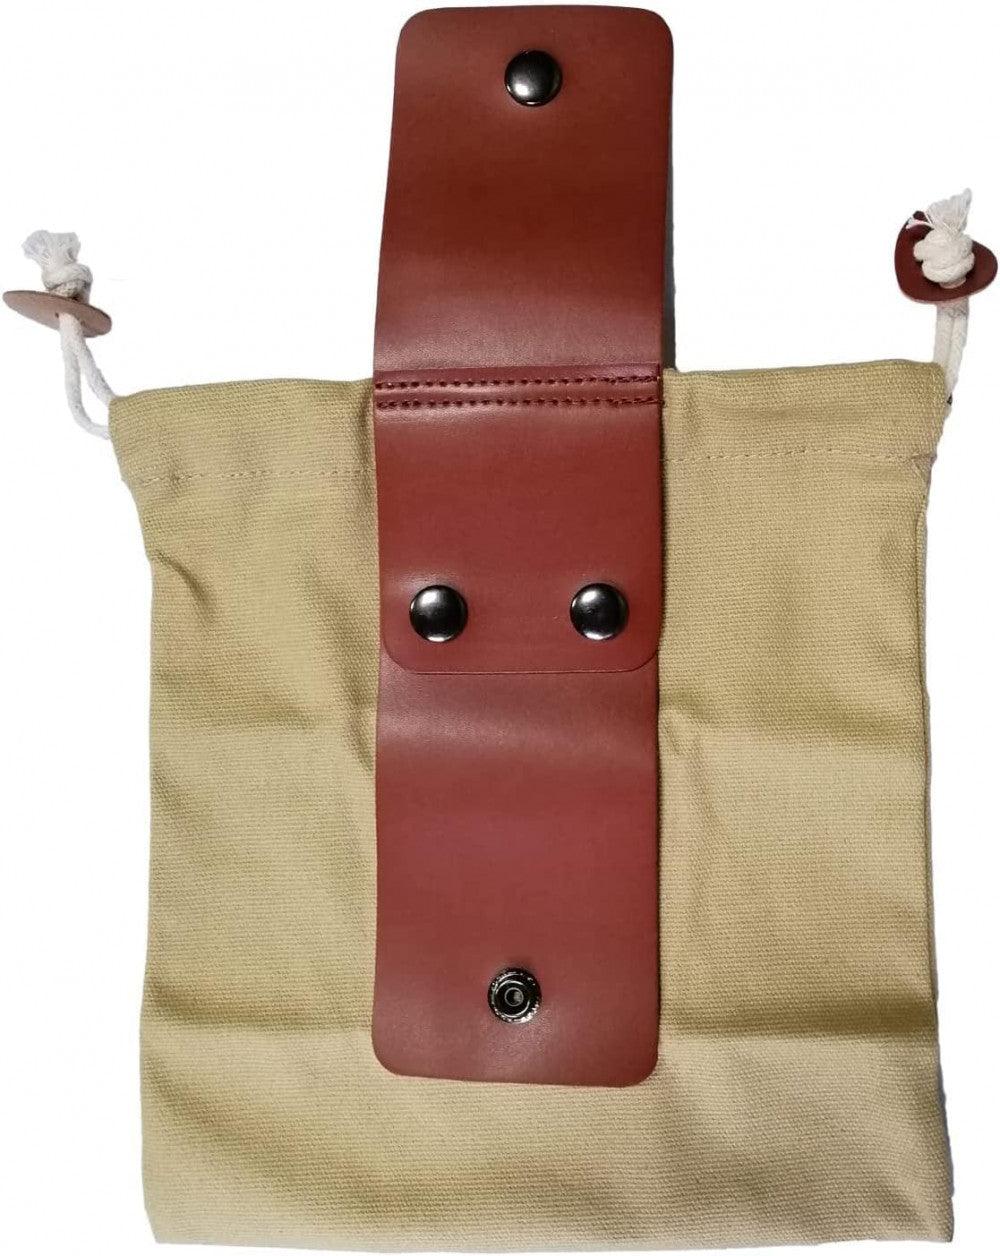 Viaszos vászon gyűjtőtáska, Gombagyűjtő táska, Összecsukható tároló 22 x 20cm nyitott állapotban